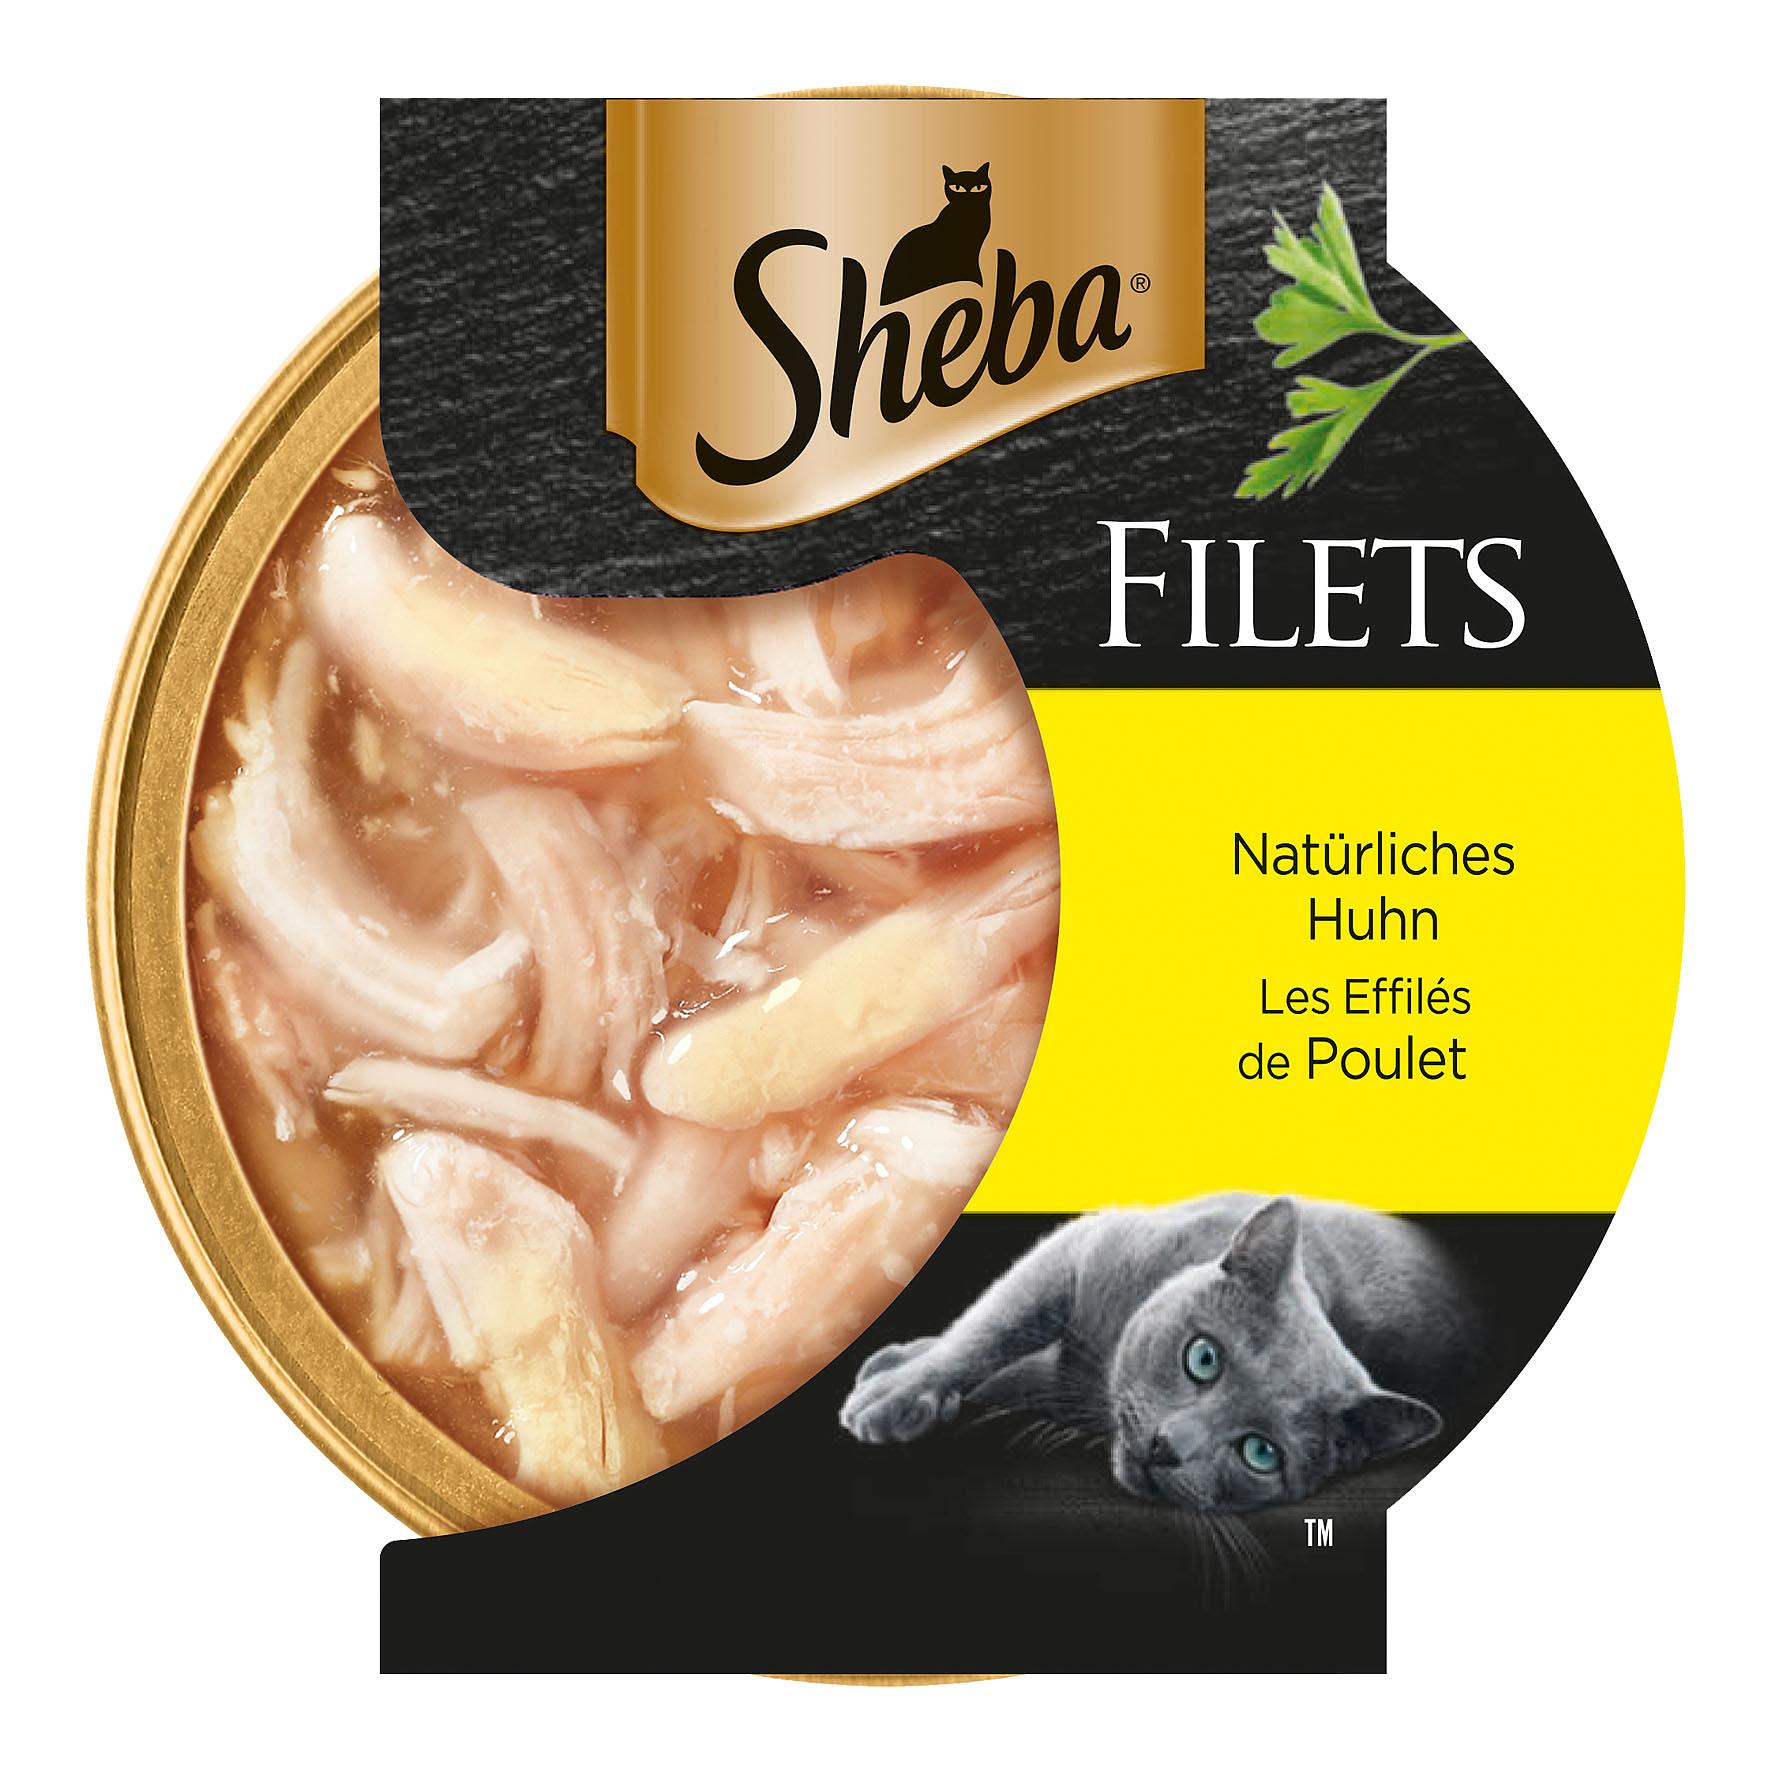 Sheba Filets Hühnchen, 60g